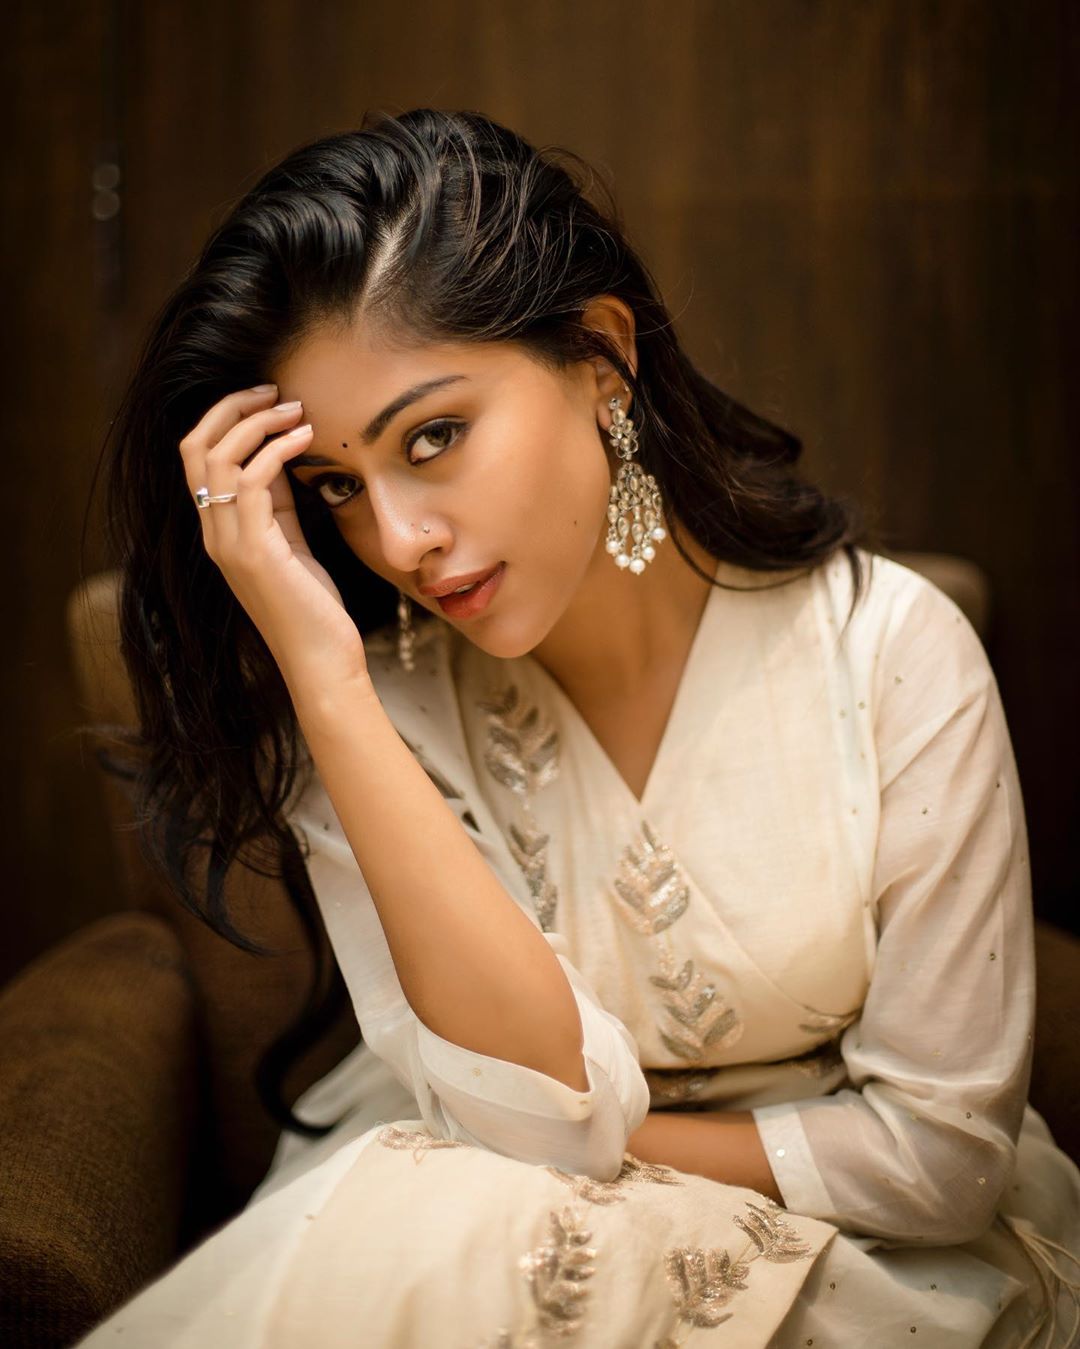 दक्षिण भारत की 10 युवा और खूबसूरत अभिनेत्री